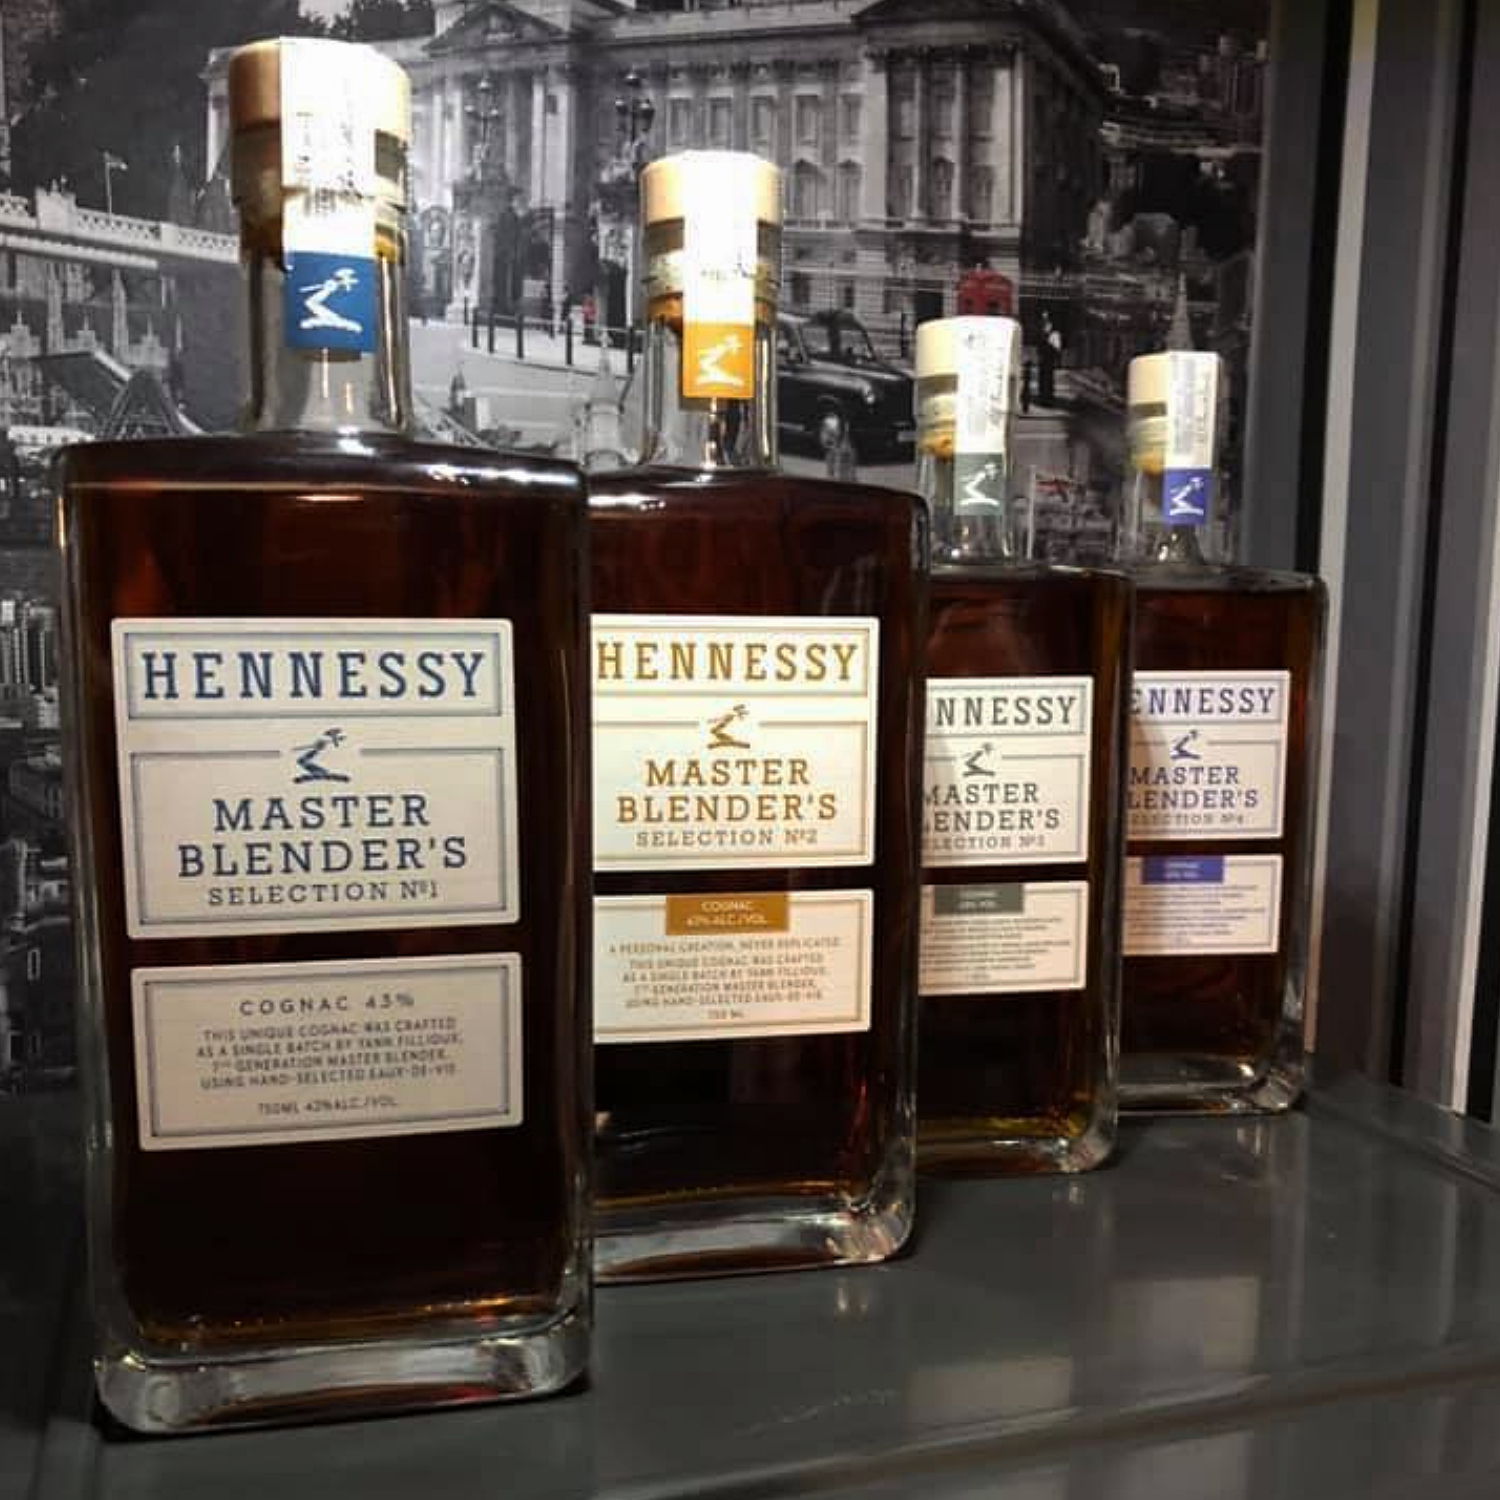 4 bottles of Hennessy Master Blender's Selection 1-4